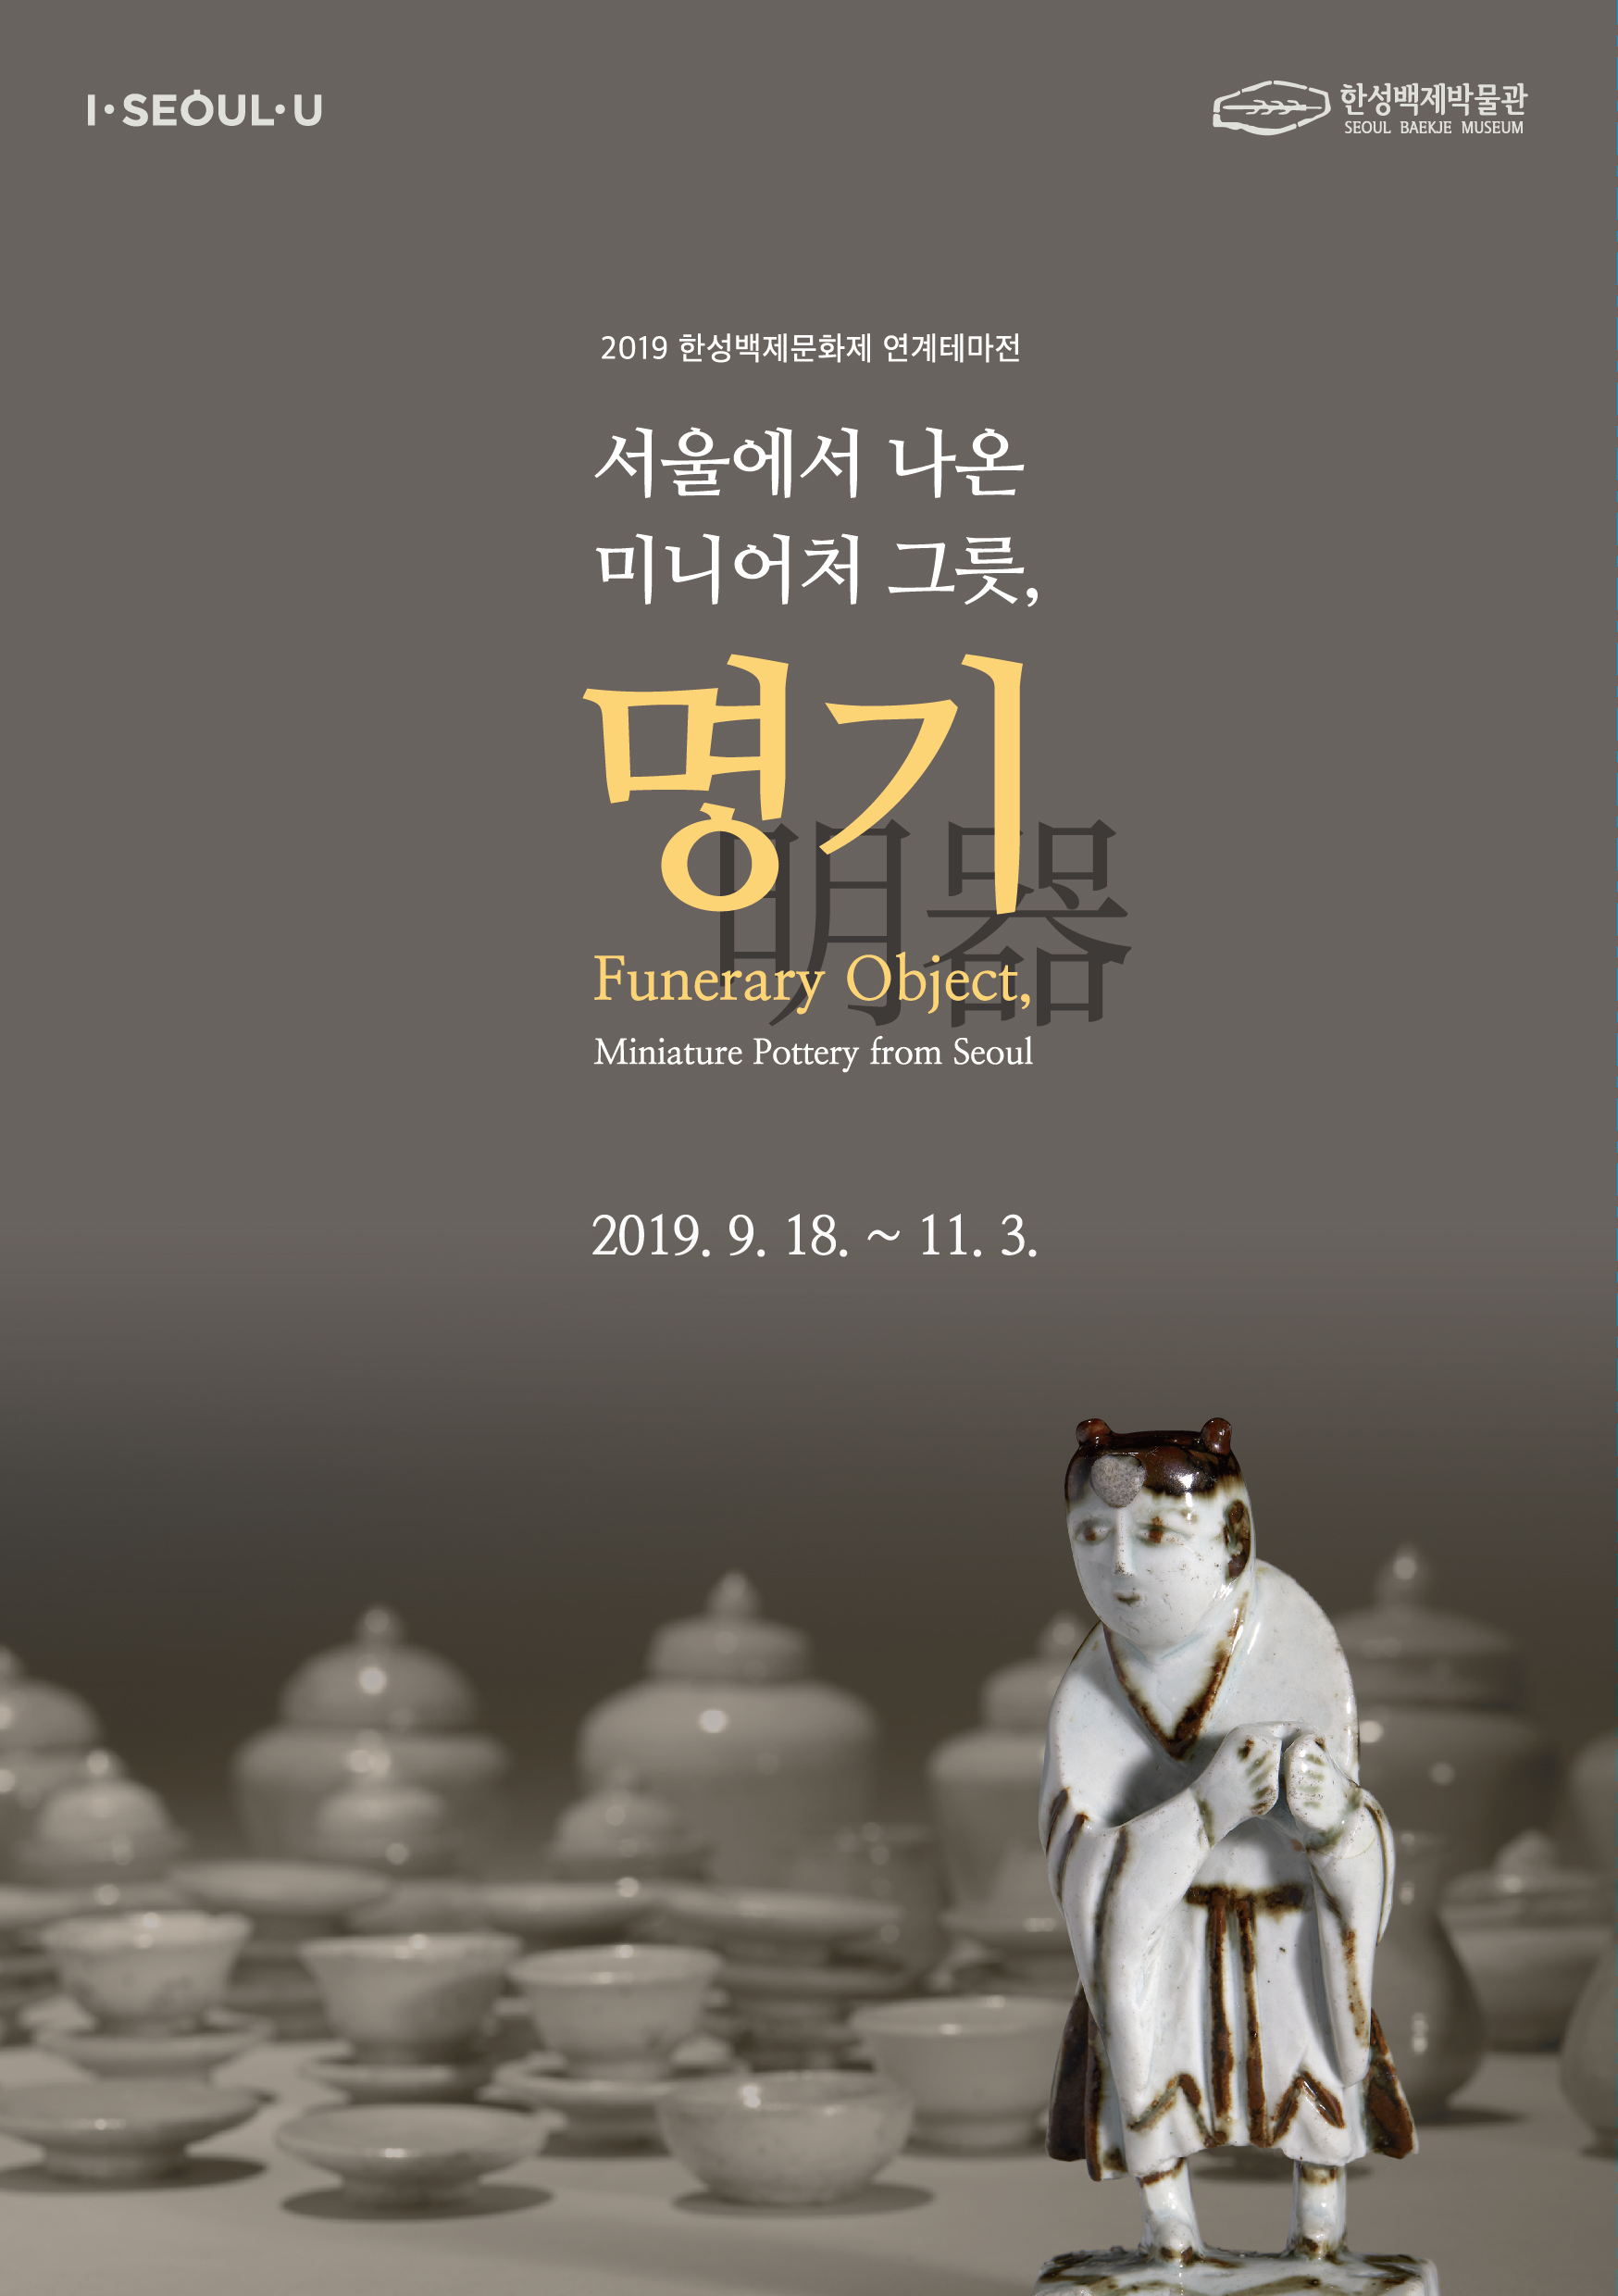 [서울][한성백제박물관] 서울에서 나온 미니어처 그릇, 명기